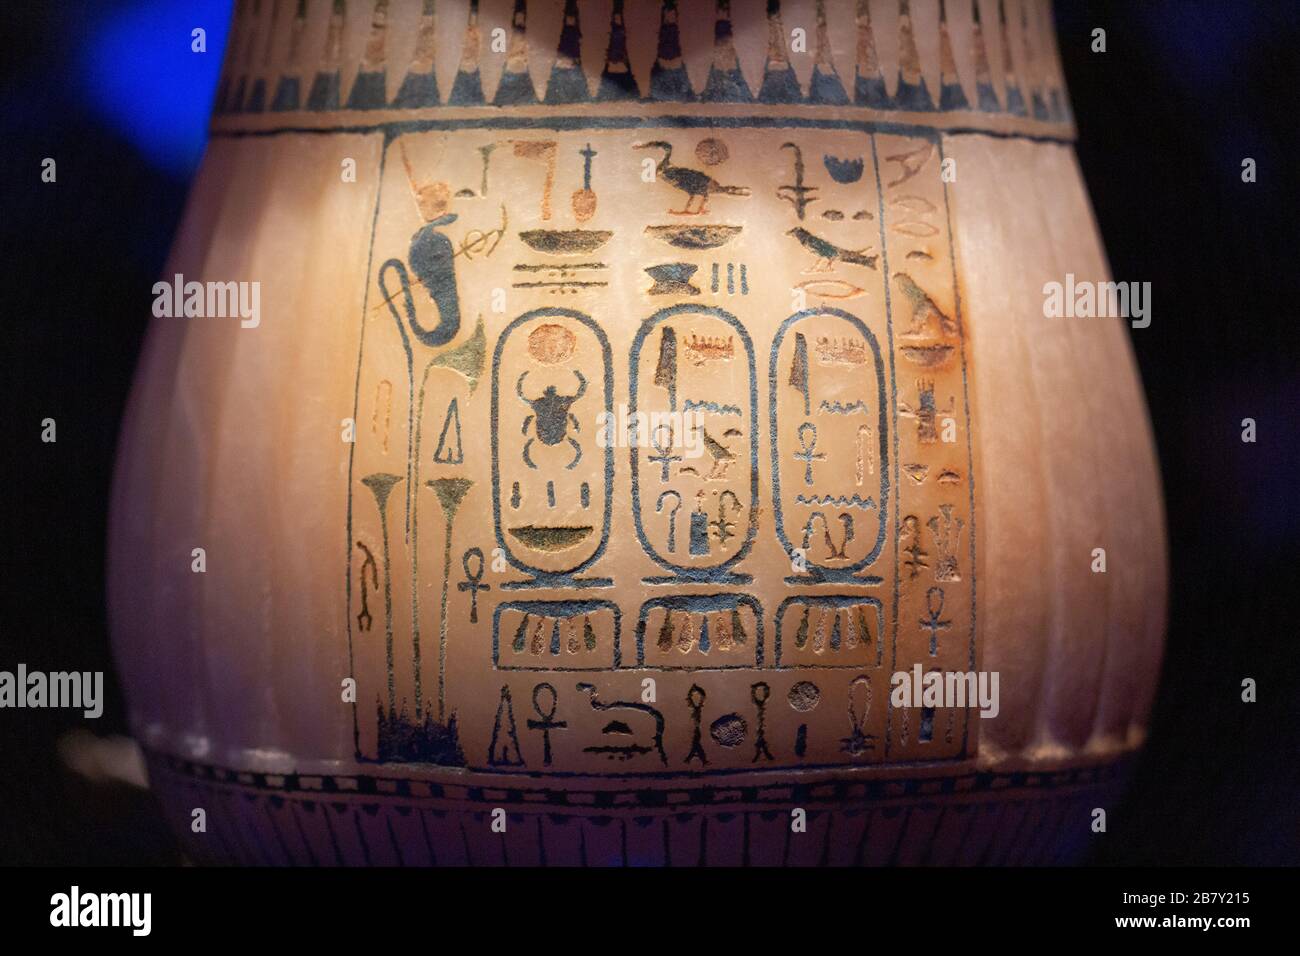 Vaso tomba Tutankhamun; vaso di calcite su uno stand, primo piano di geroglifici egiziani antichi; tomba tutankhamens, arte, antico Egitto Foto Stock